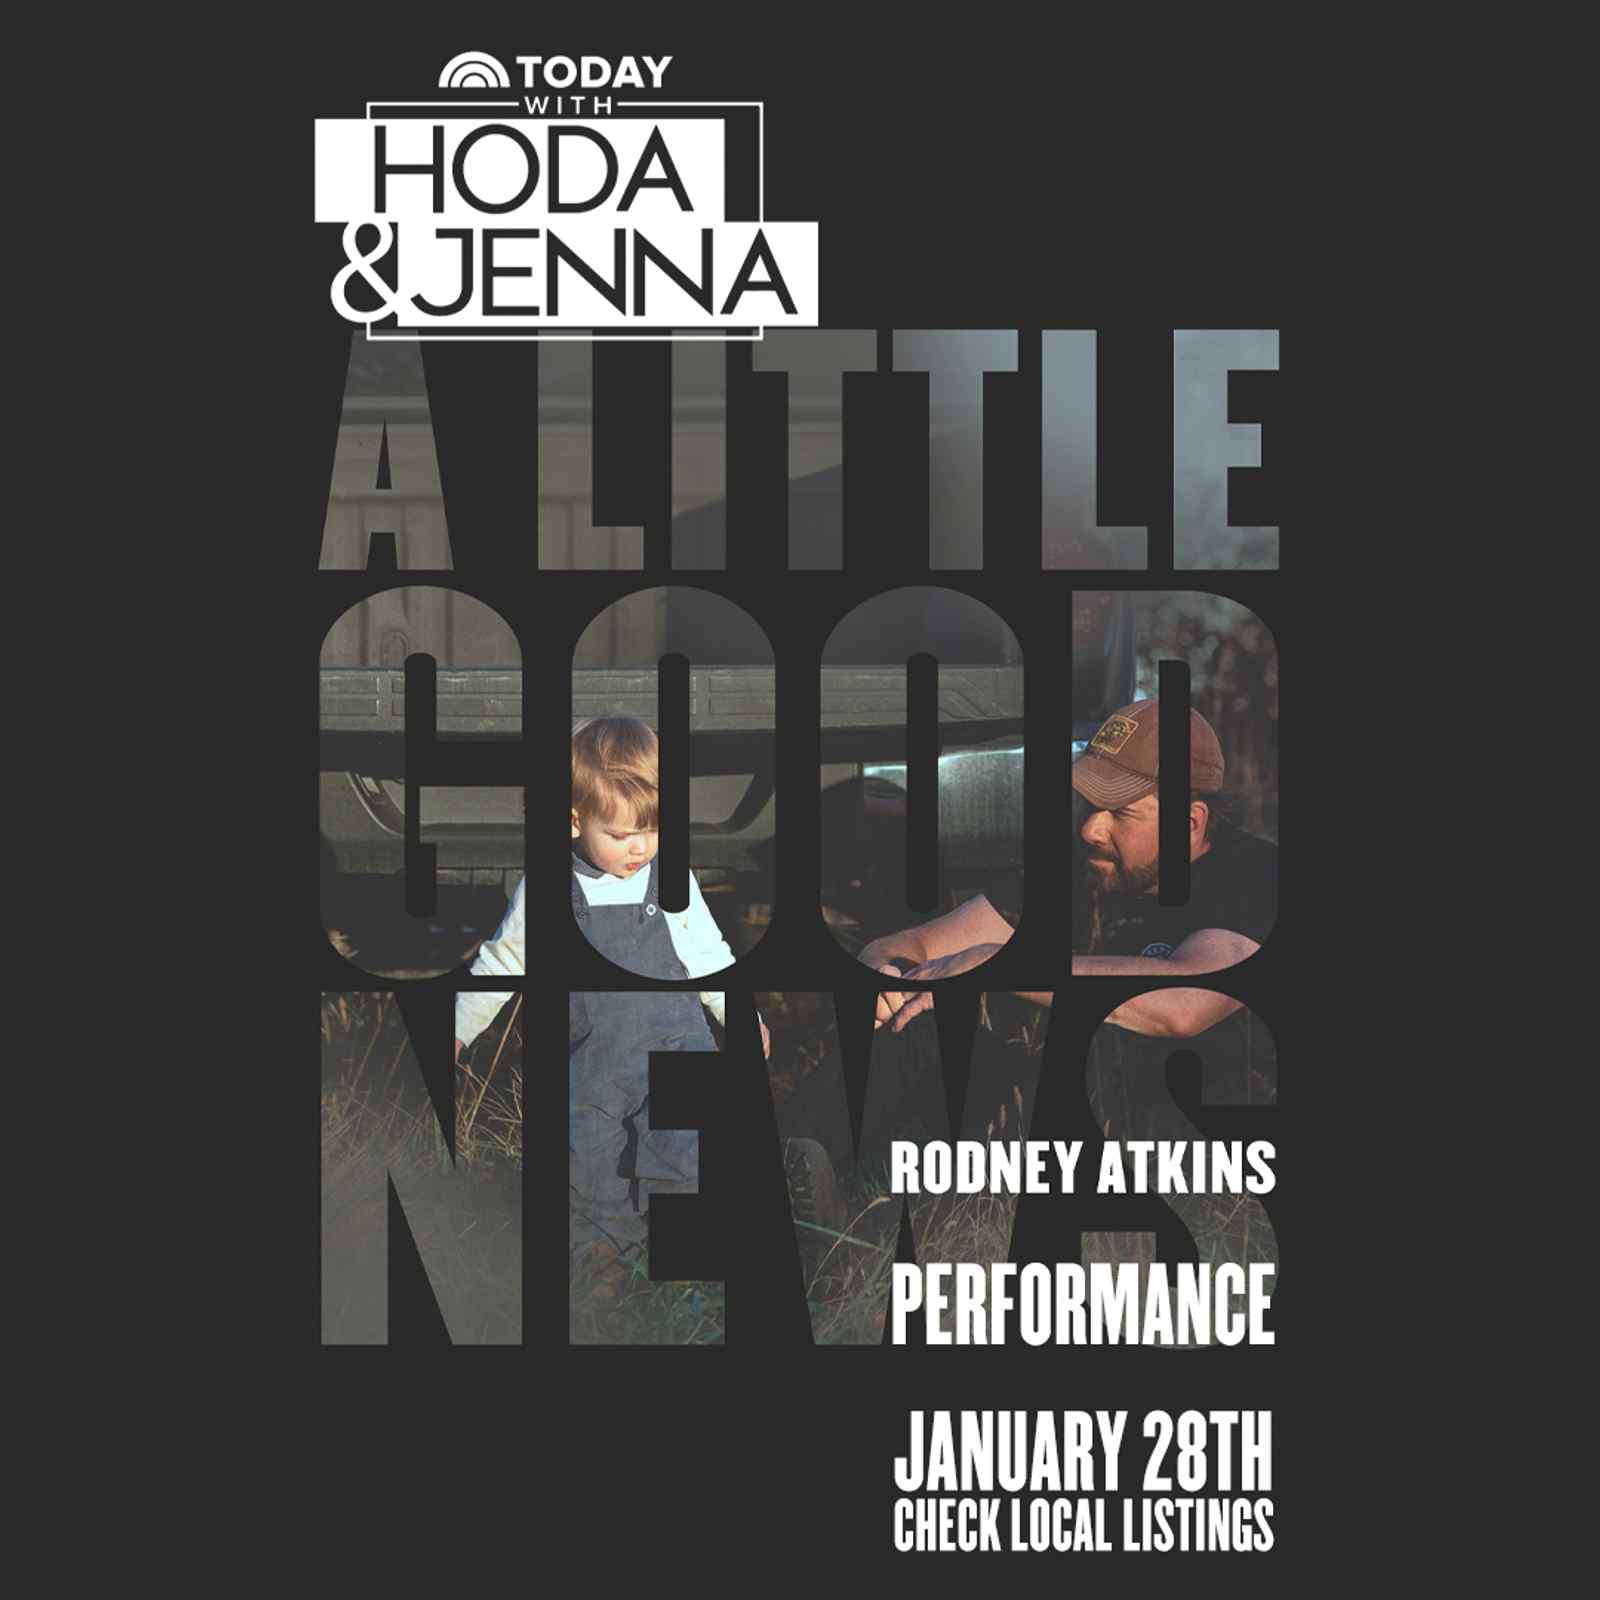 TODAY with Hoda & Jenna: Rodney Atkins